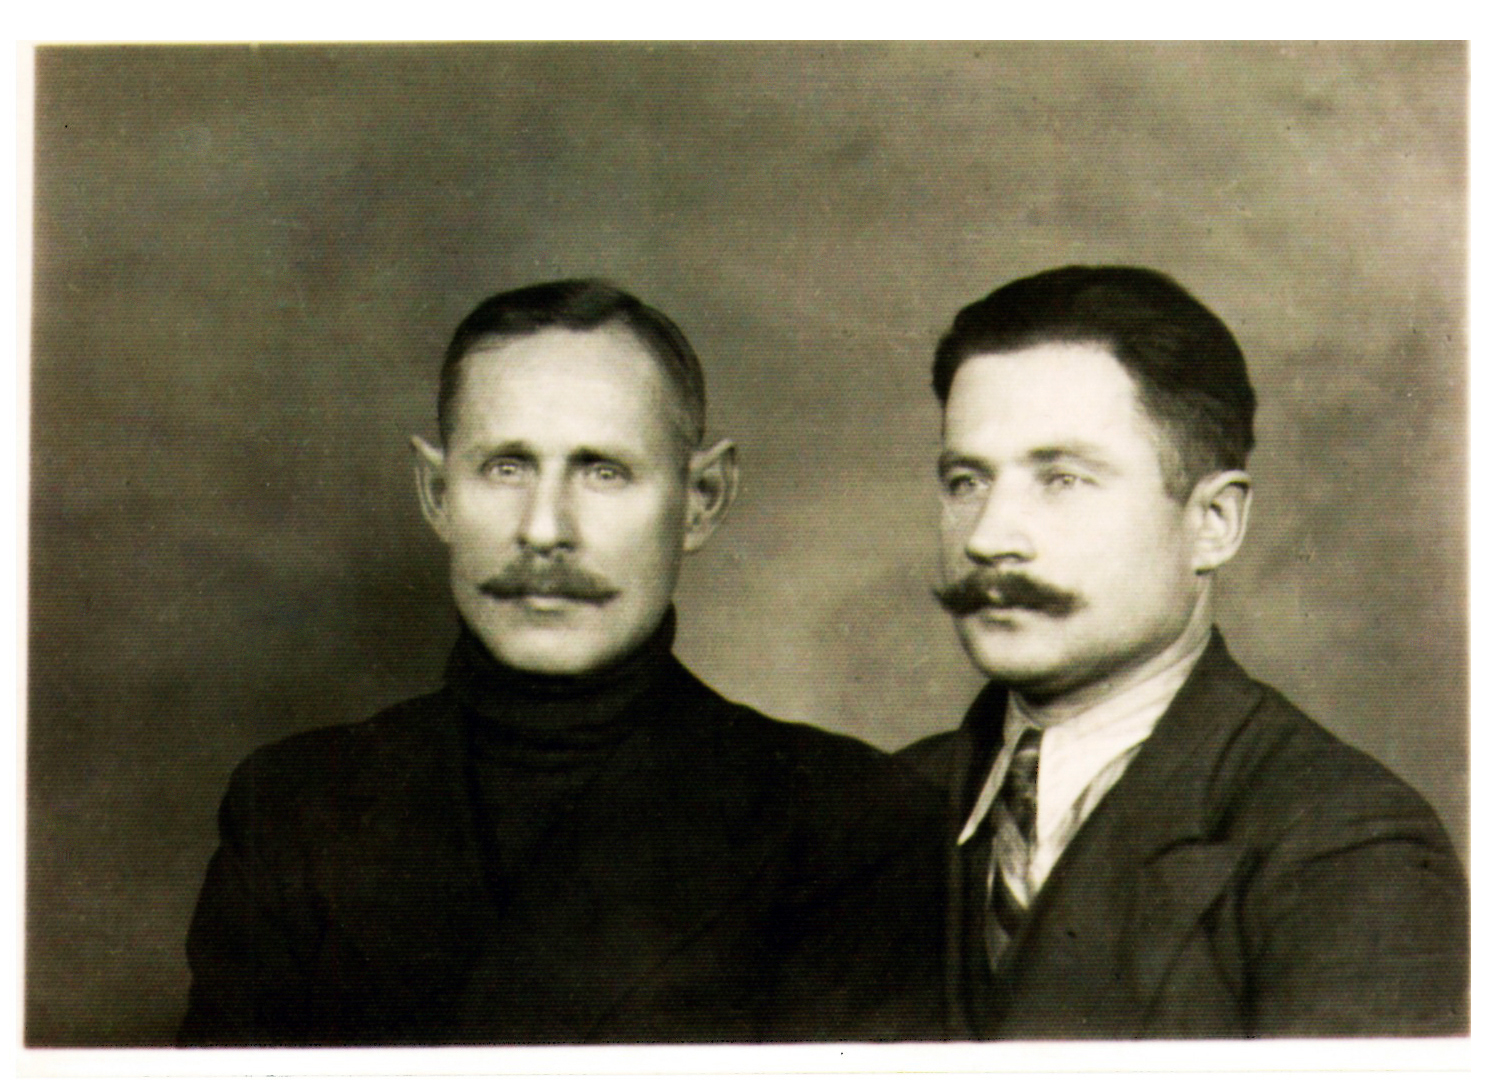 11 pav. Katedros lobyno slėpėjai: Kajetanas Gratulevičius (kairėje) ir Janas Malyško, 1939 m. rudenį Vokietijai užpuolus Lenkiją, kaip gedulo ženklą užsiaugino ūsus. Nuotr. iš A. Malyško asmeninio archyvo